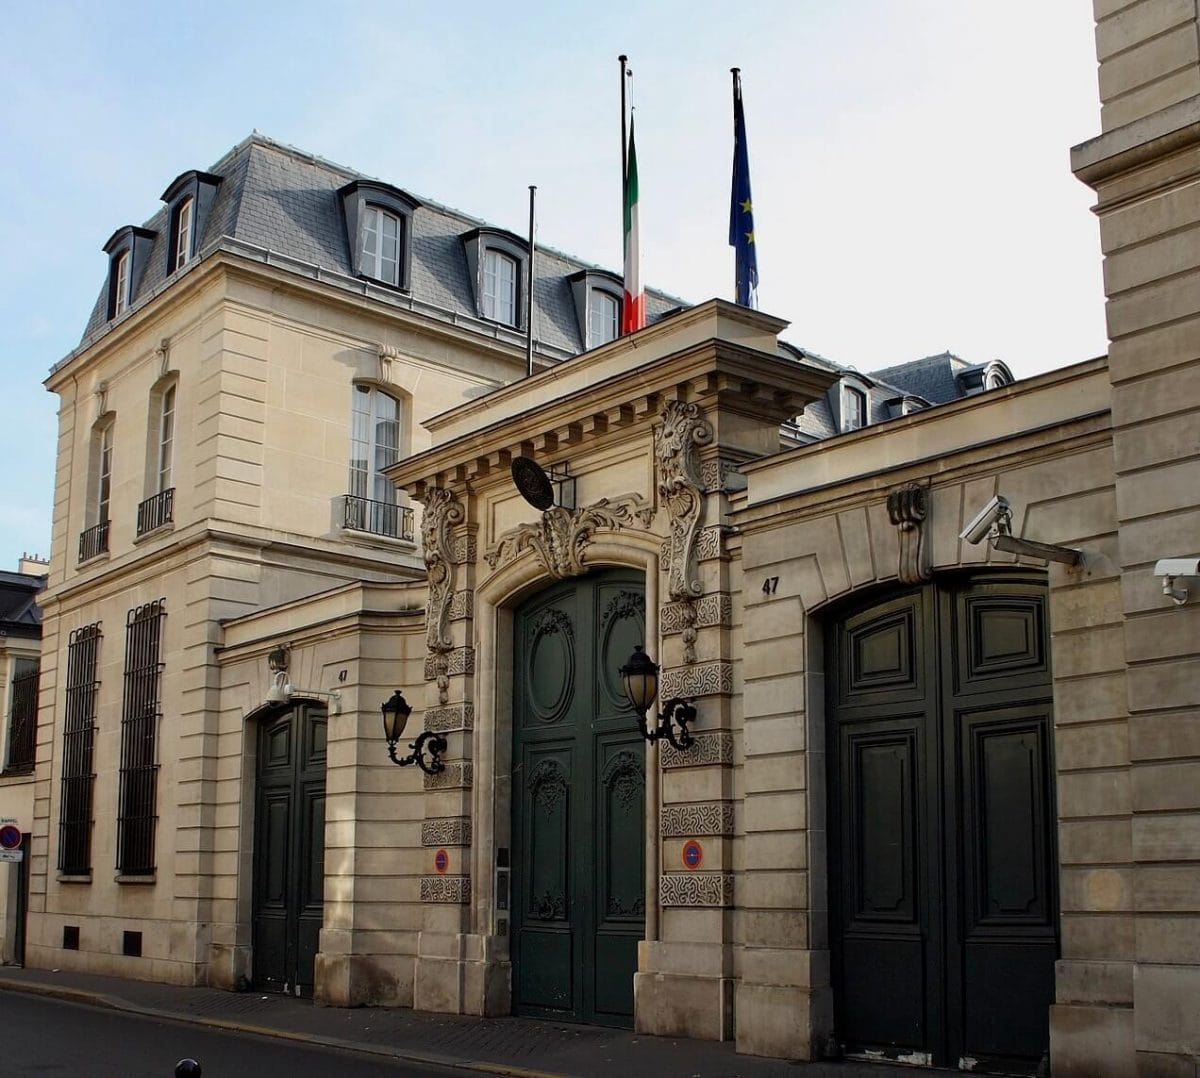 Ambassade d'Italie Hôtel de la Rochefoucauld-Doudeauville in Paris (Reinhardhauke / CC BY-SA 3.0)